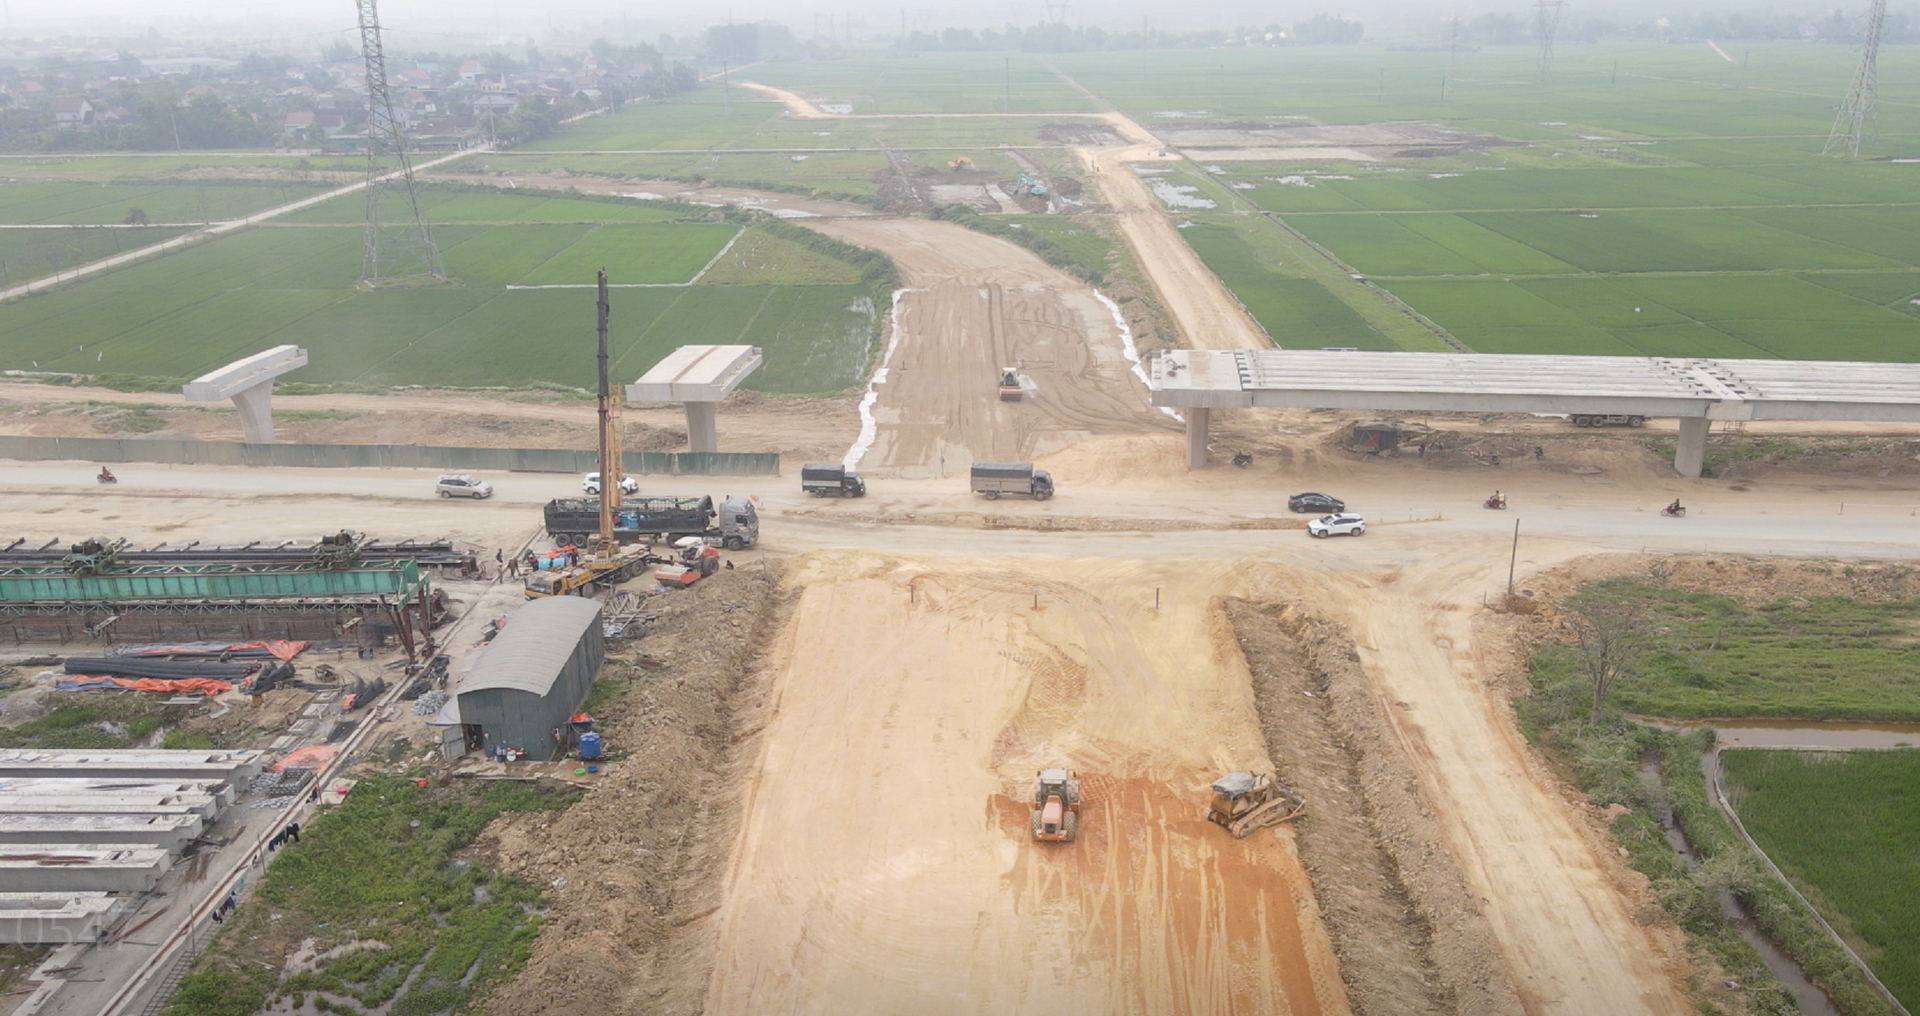 Theo tiến độ tỉnh Hà Tĩnh giao, trong ngày hôm nay (30/6) huyện Can Lộc phải bàn giao mặt bằng sạch cho đơn vị thi công thực hiện dự án. Ảnh: Gia Hưng.